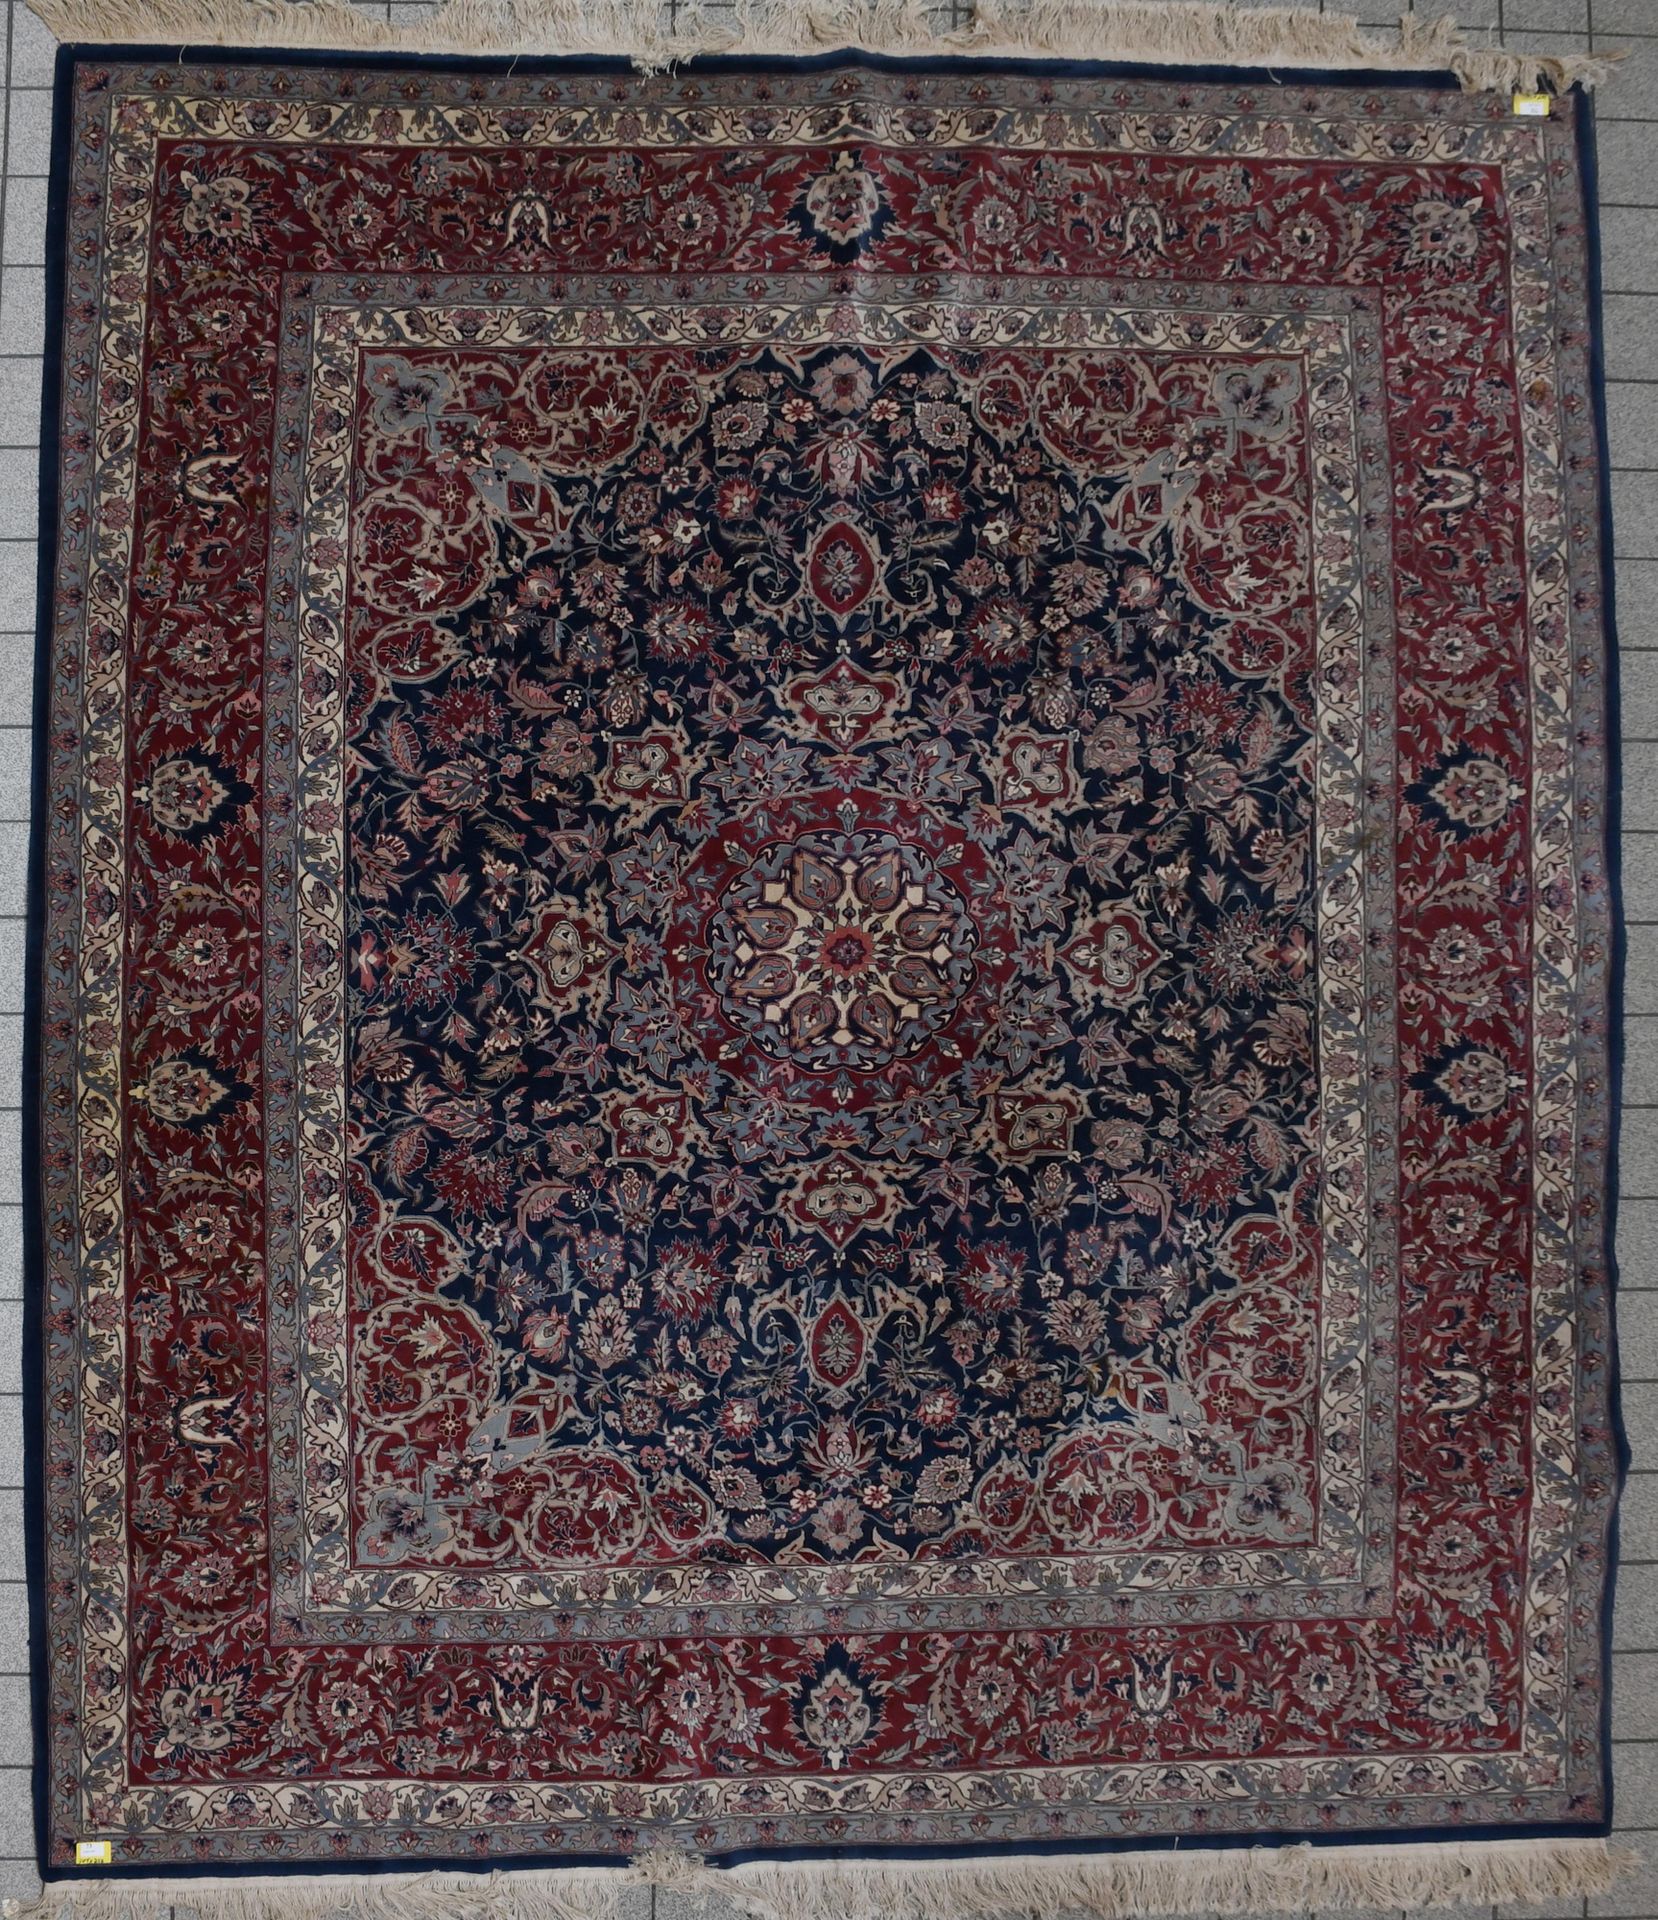 Null Tapis
Tapis d’Orient iranien. Dimensions : 301 cm x 256 cm.